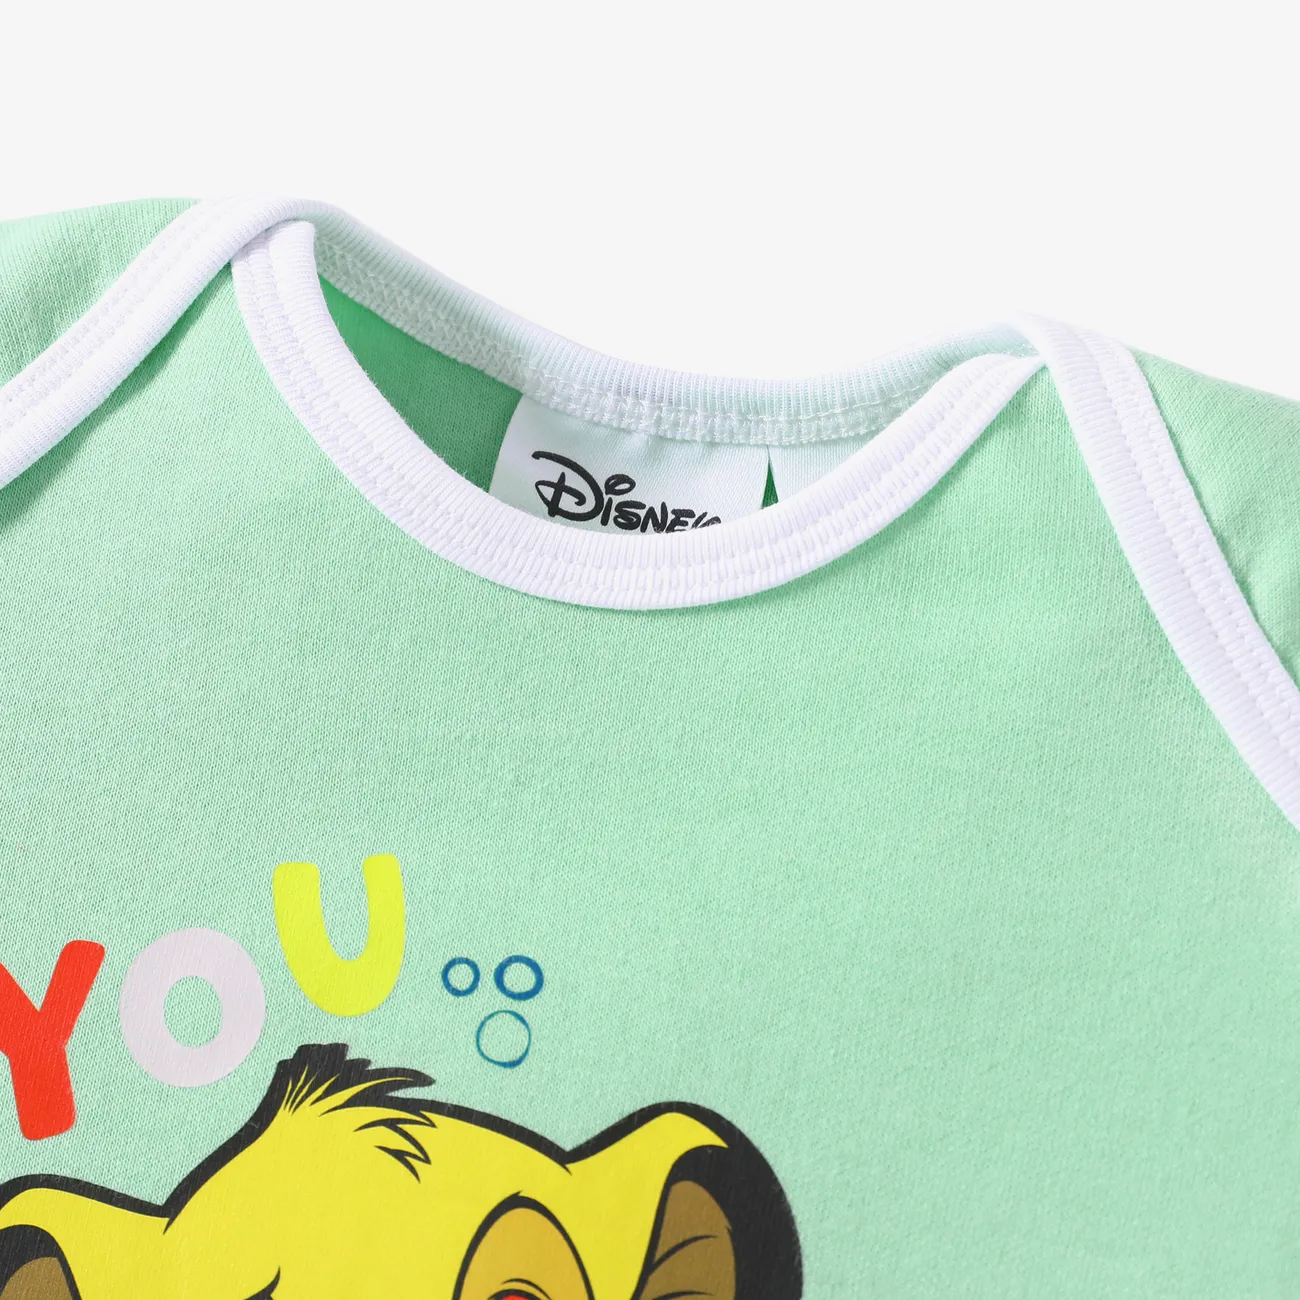 Disney König der Löwen Baby Unisex Löwe Kindlich Kurzärmelig Strampler Frühlingsgrün big image 1